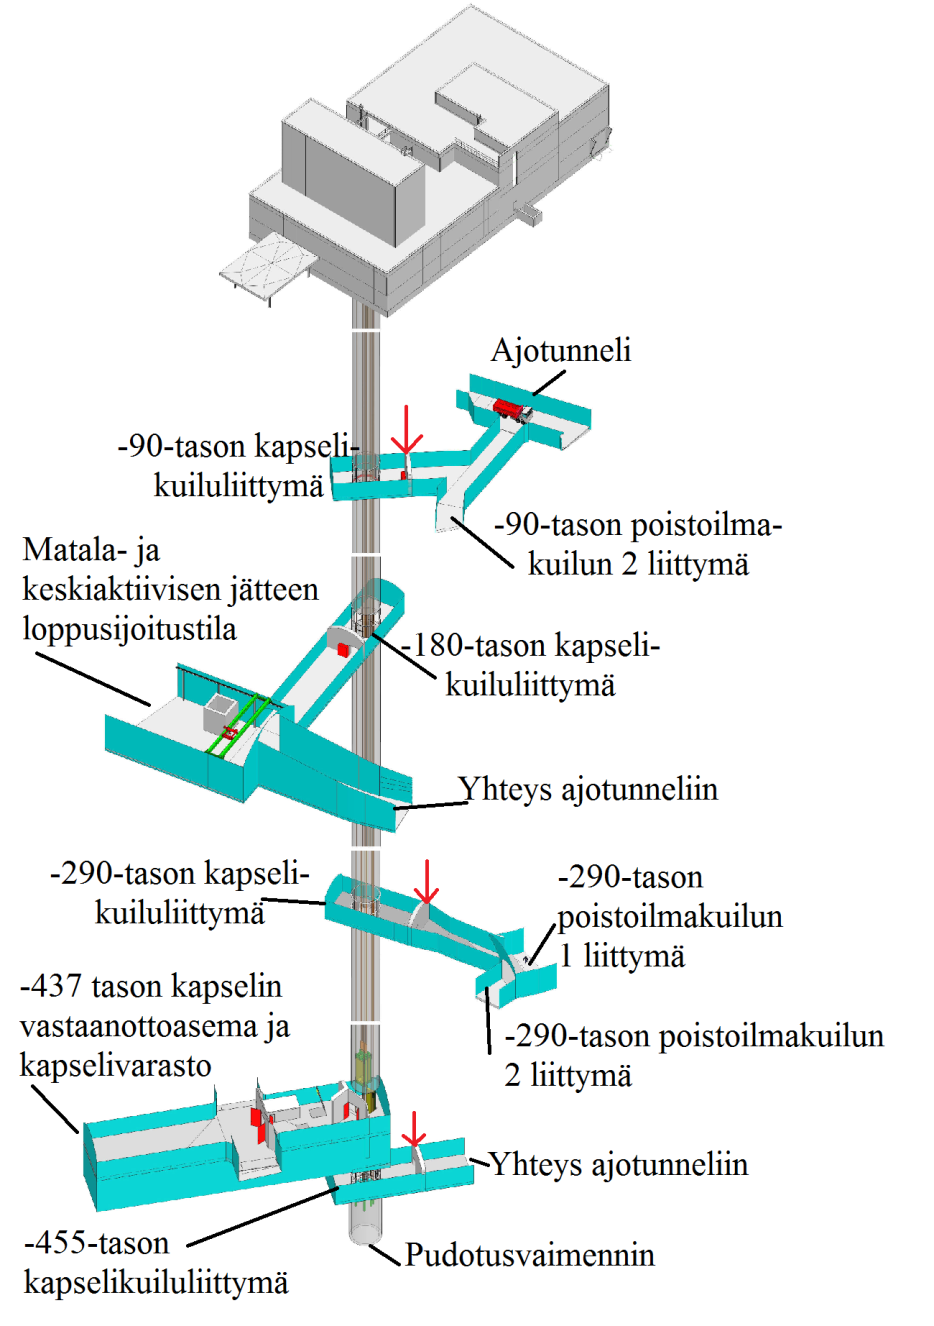 Kuva 12. Kapselikuilun ja kuiluliittymien väliset valvonta-alueen rajat. (P.136 Kapselikuilu järjestelmäkuvaus 2012) 5.4.